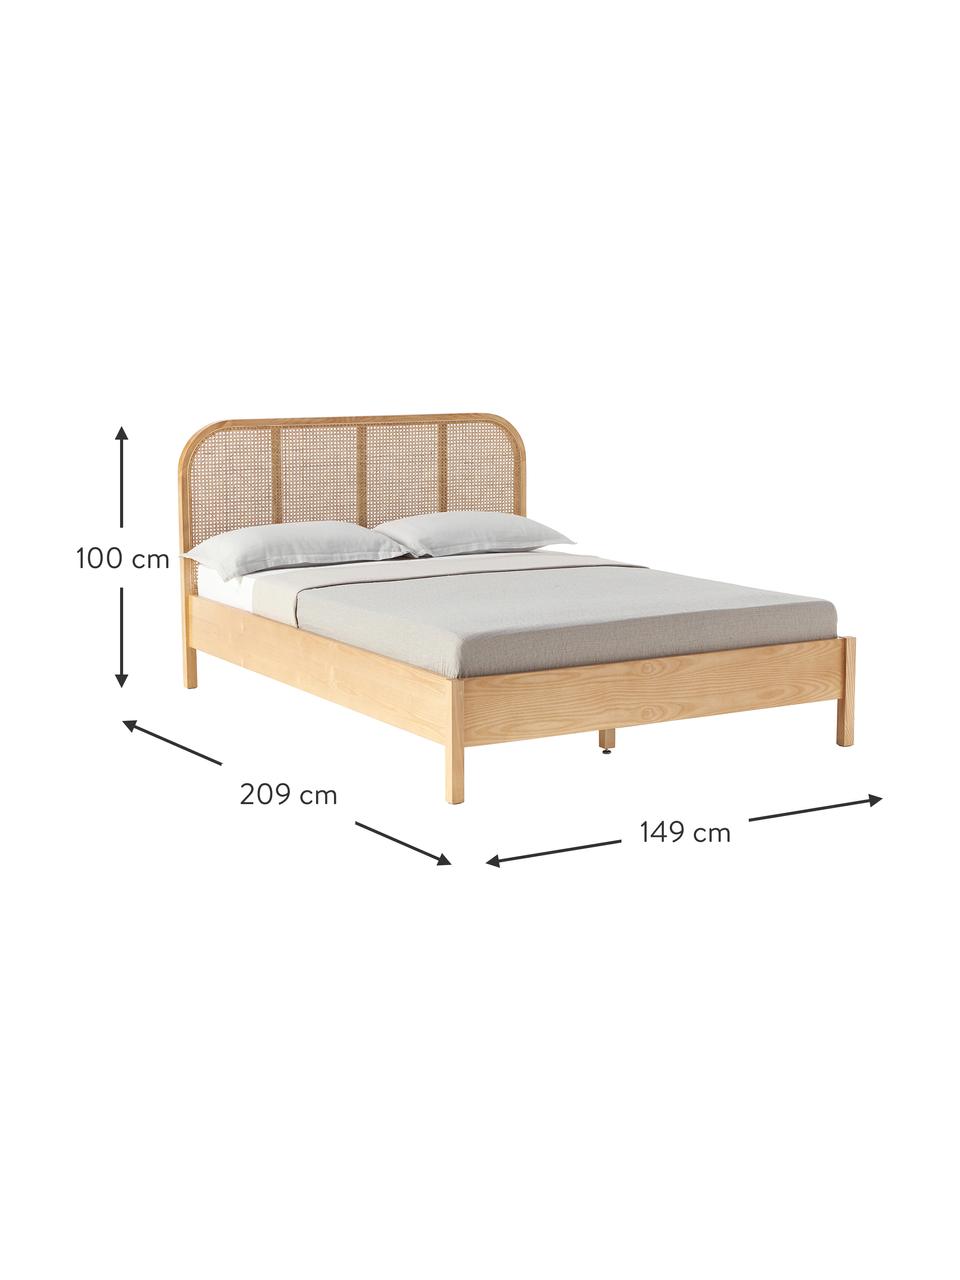 Dřevěná postel s vídeňskou pleteninou Jones, Jasanové dřevo, ratan, 140 x 200 cm